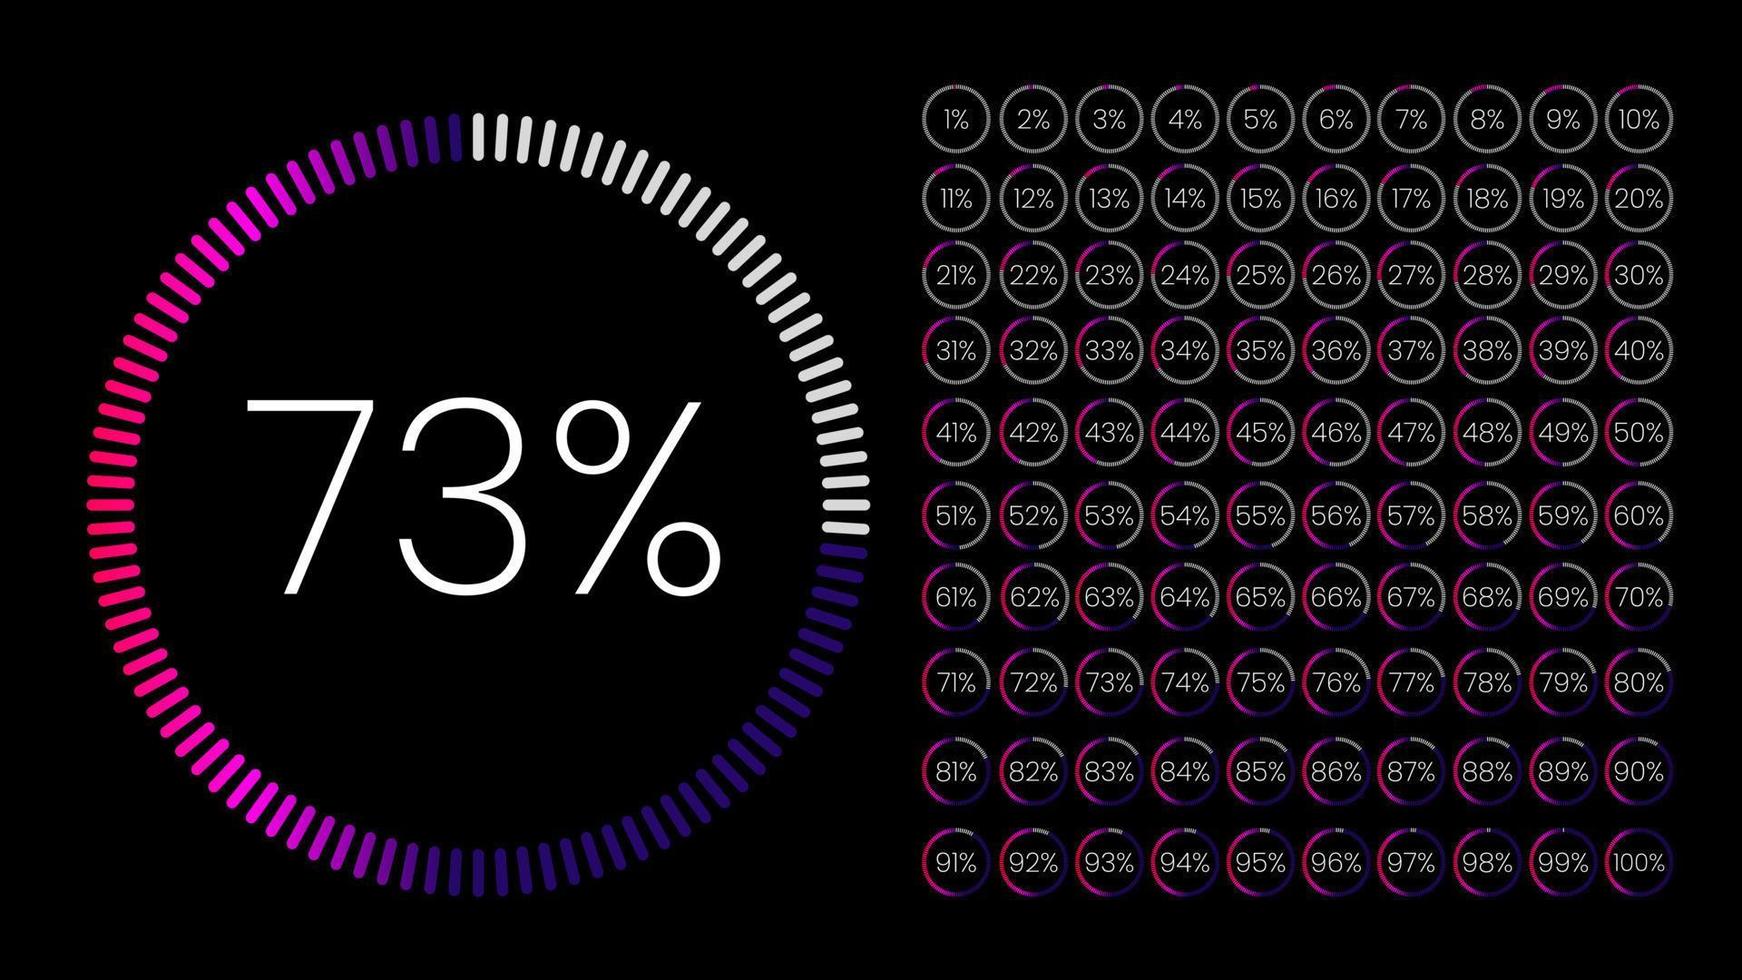 conjunto de medidores de porcentaje de círculo de 0 a 100 para infografía, diseño de interfaz de usuario ui. gráfico circular degradado descargando el progreso de púrpura a blanco en fondo negro. vector de diagrama de círculo.